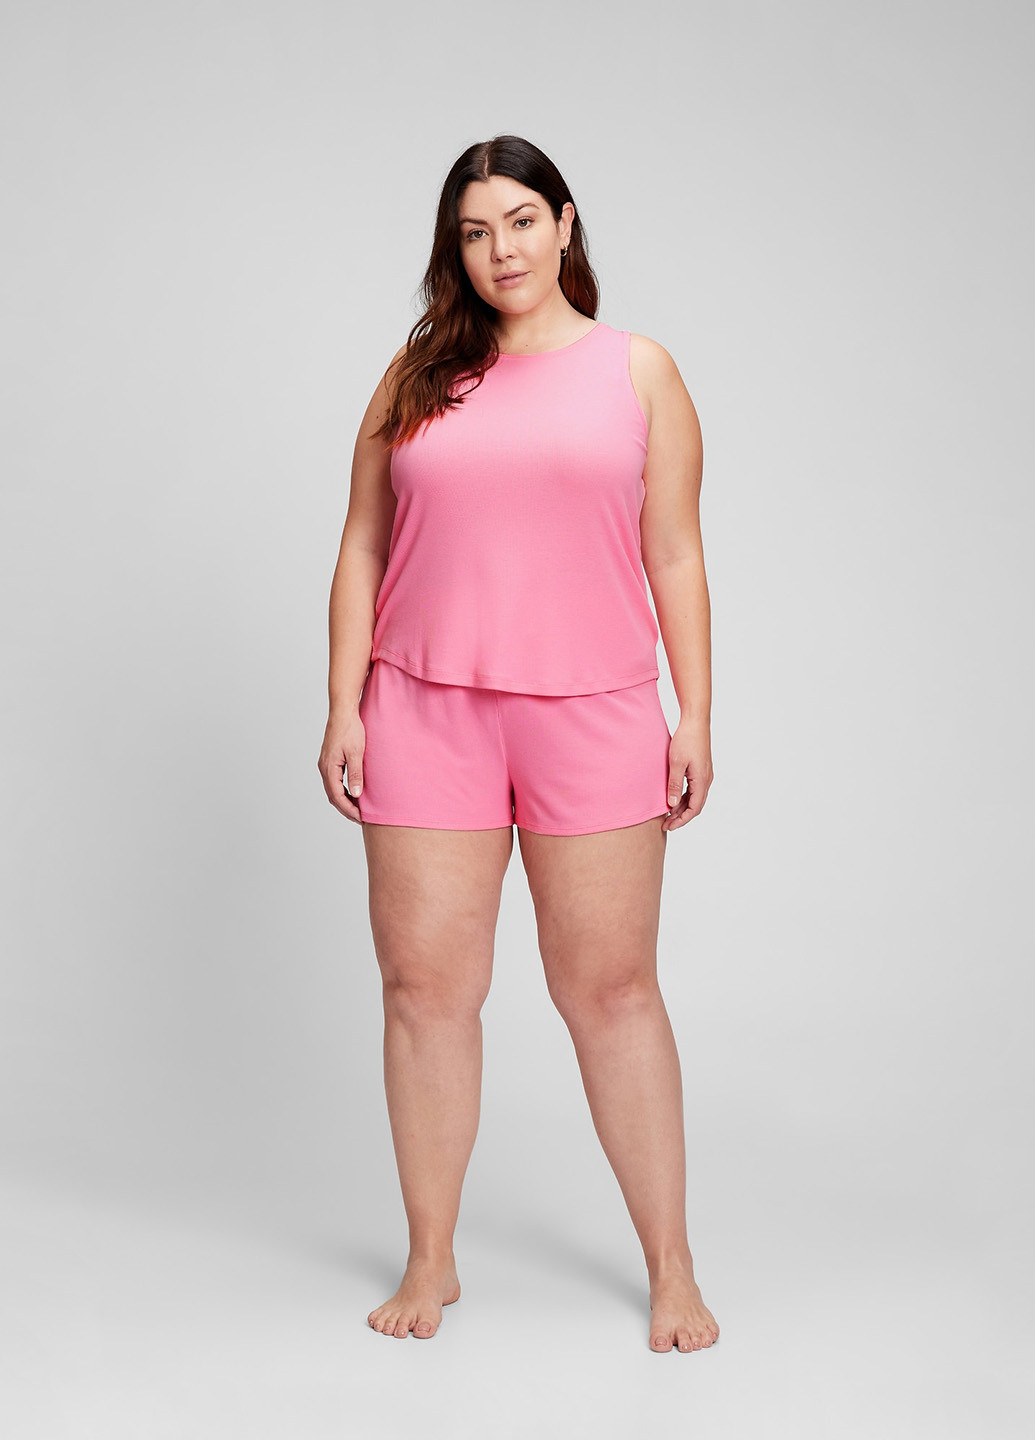 Розовая всесезон пижама (майка, шорты) майка + шорты Gap